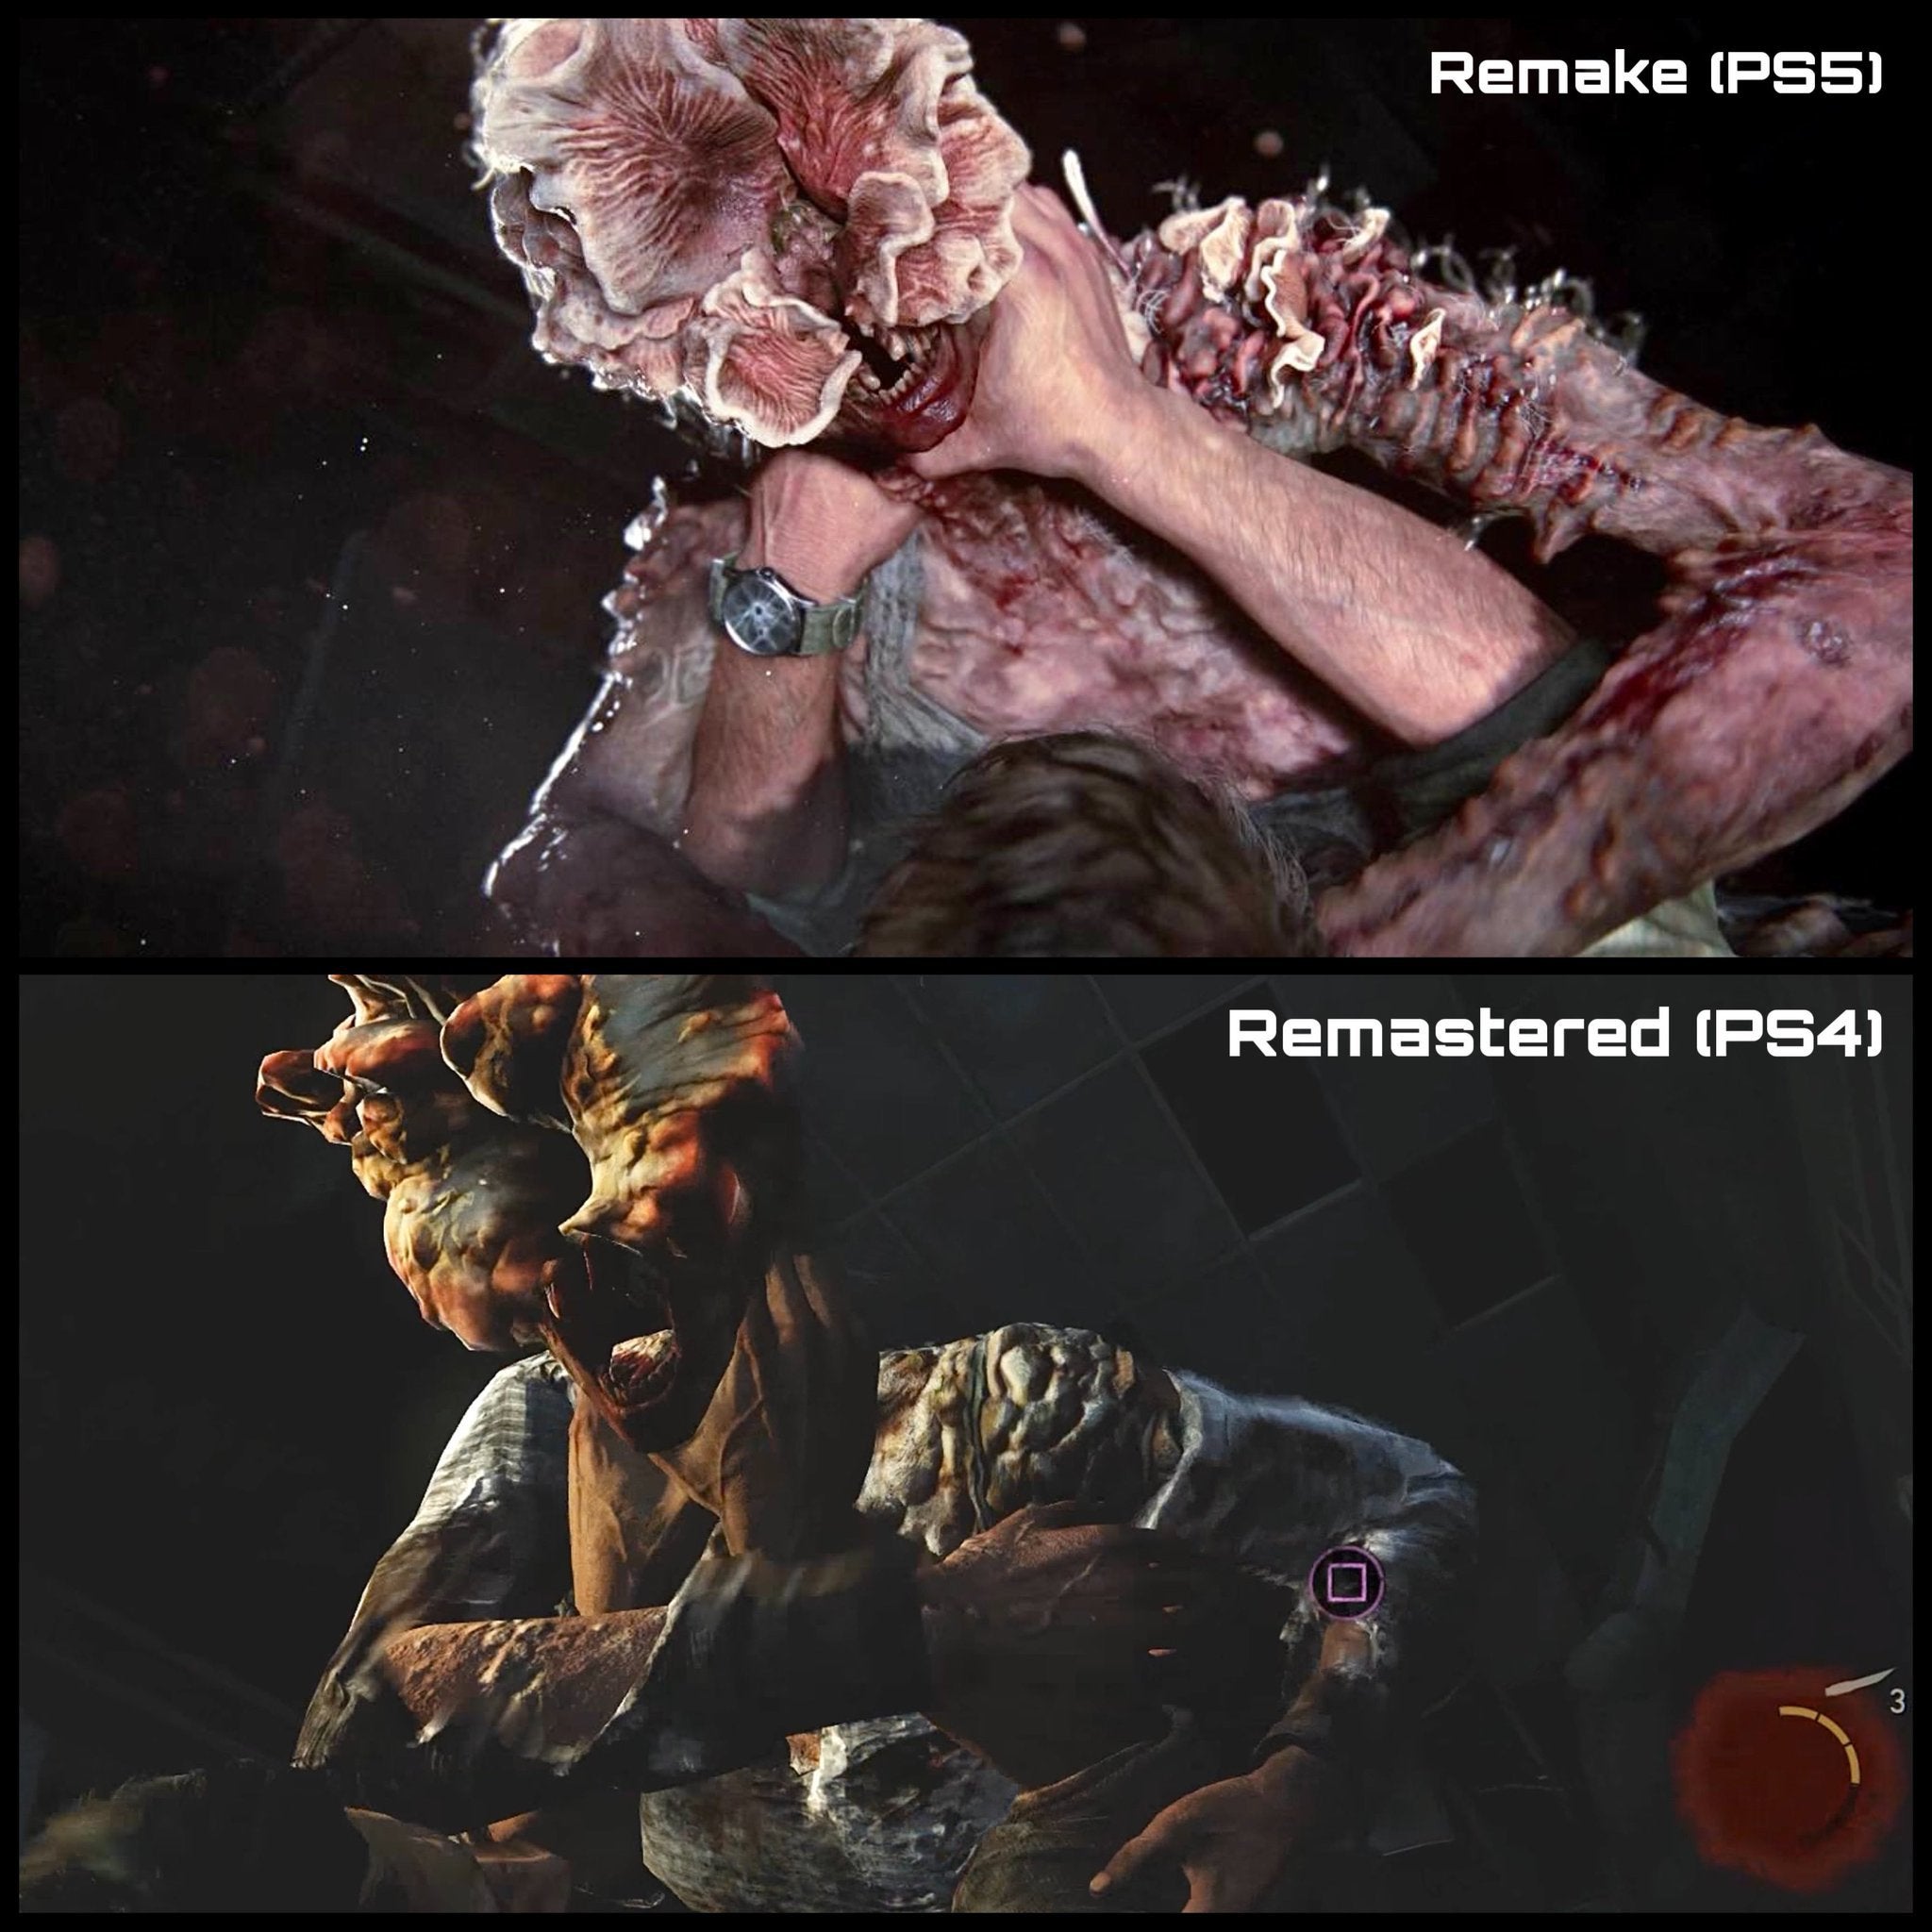 Image for Videosrovnání původního The Last of Us s remakem